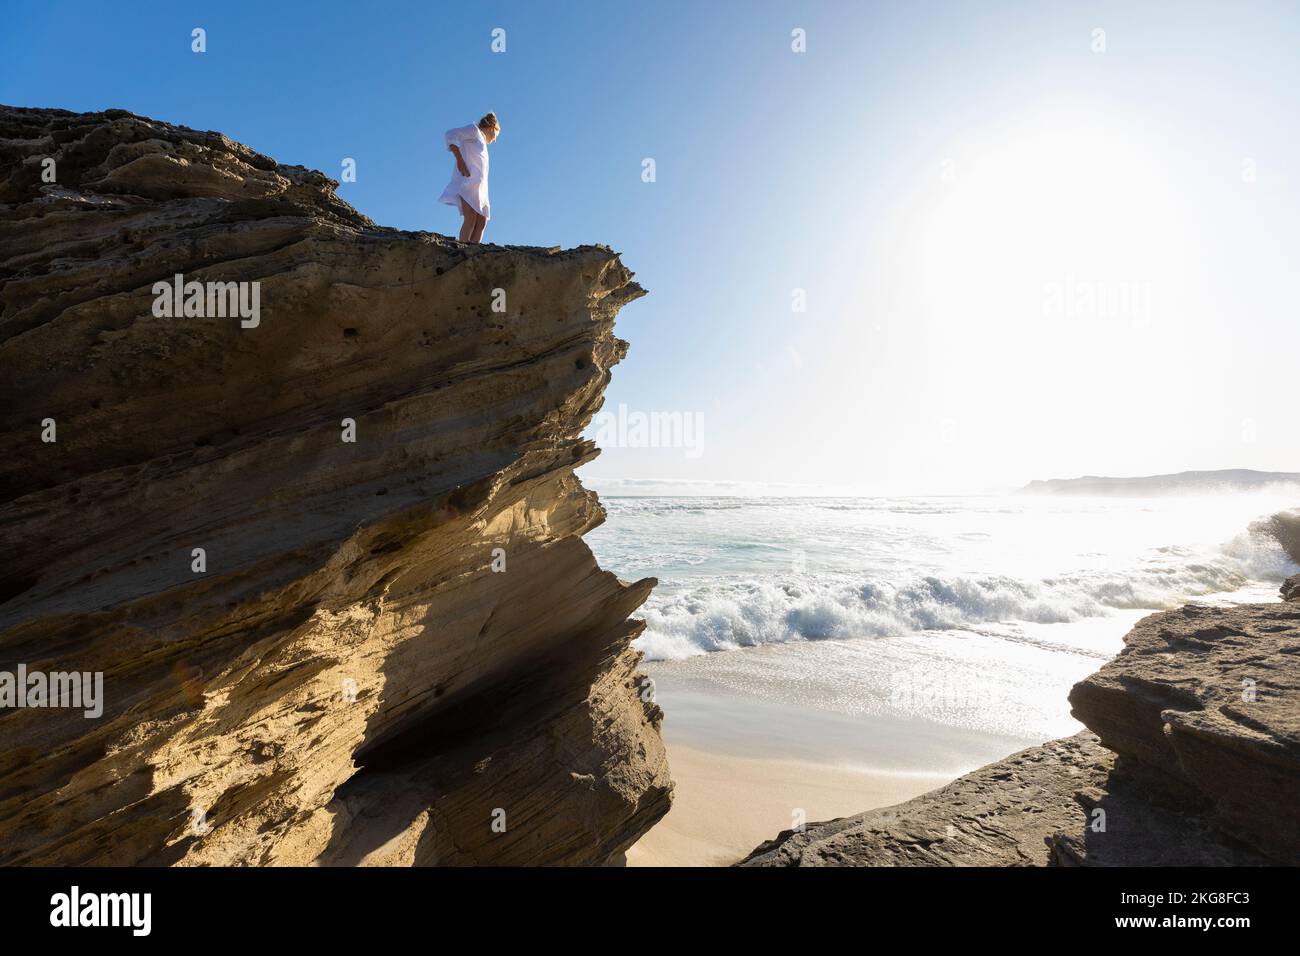 Afrique du Sud, Hermanus, adolescente (16-17) debout sur la falaise et regardant la mer Banque D'Images